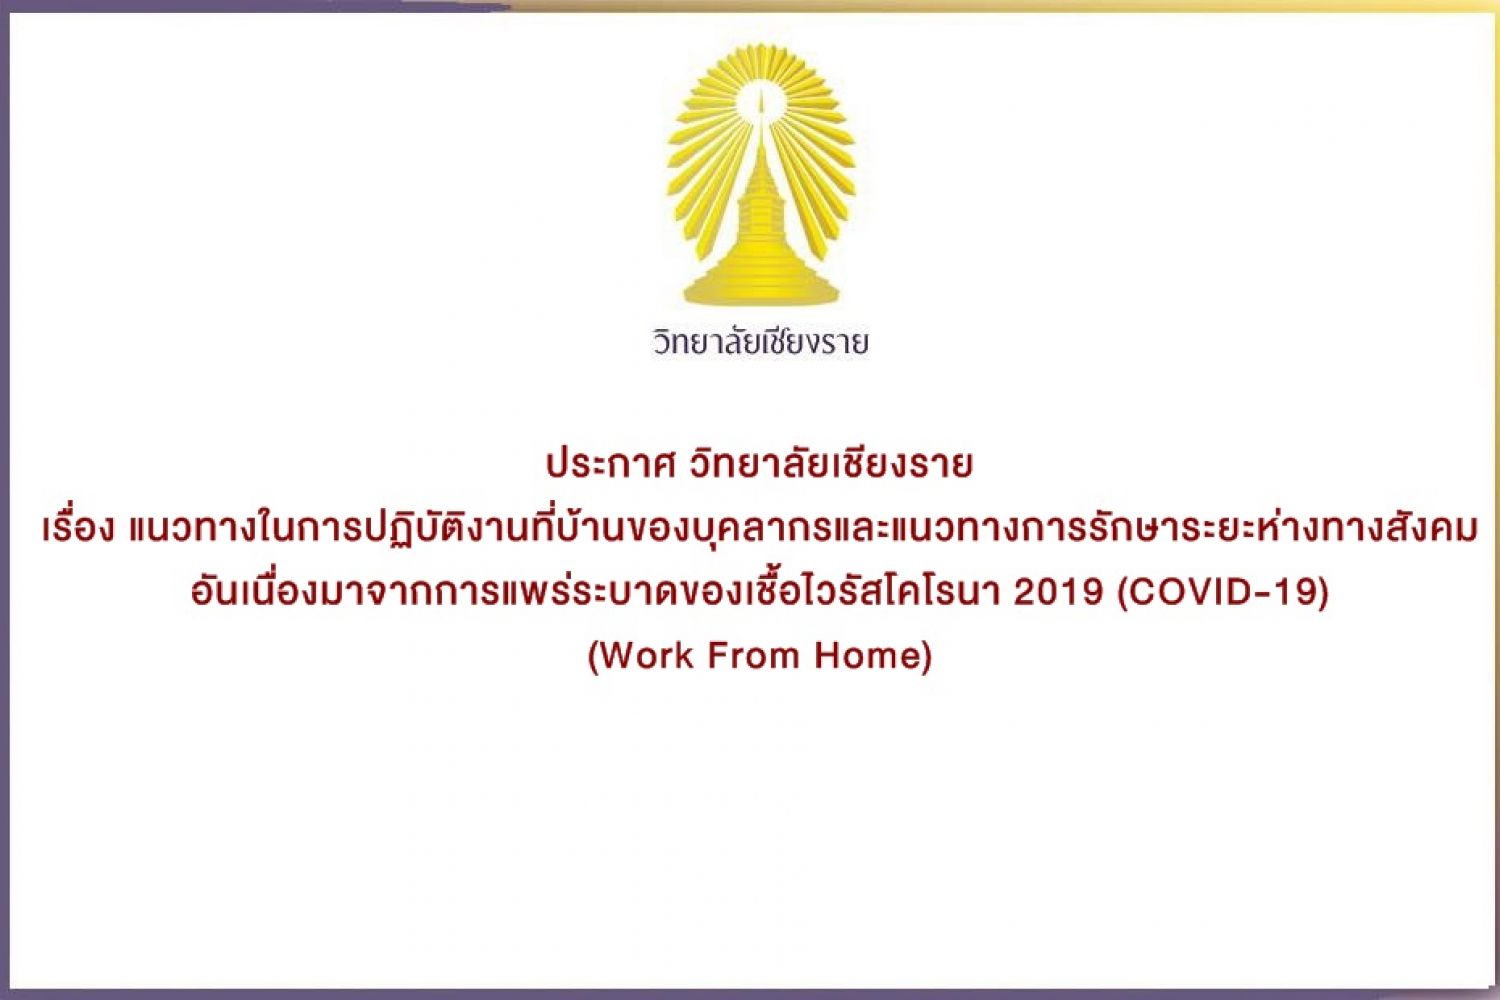 แนวทางในการปฏิบัติงานที่บ้านของบุคลากร ช่วงการระบาดของเชื้อไวรัสโคโรนา 2019 COVID-19 Work From Home